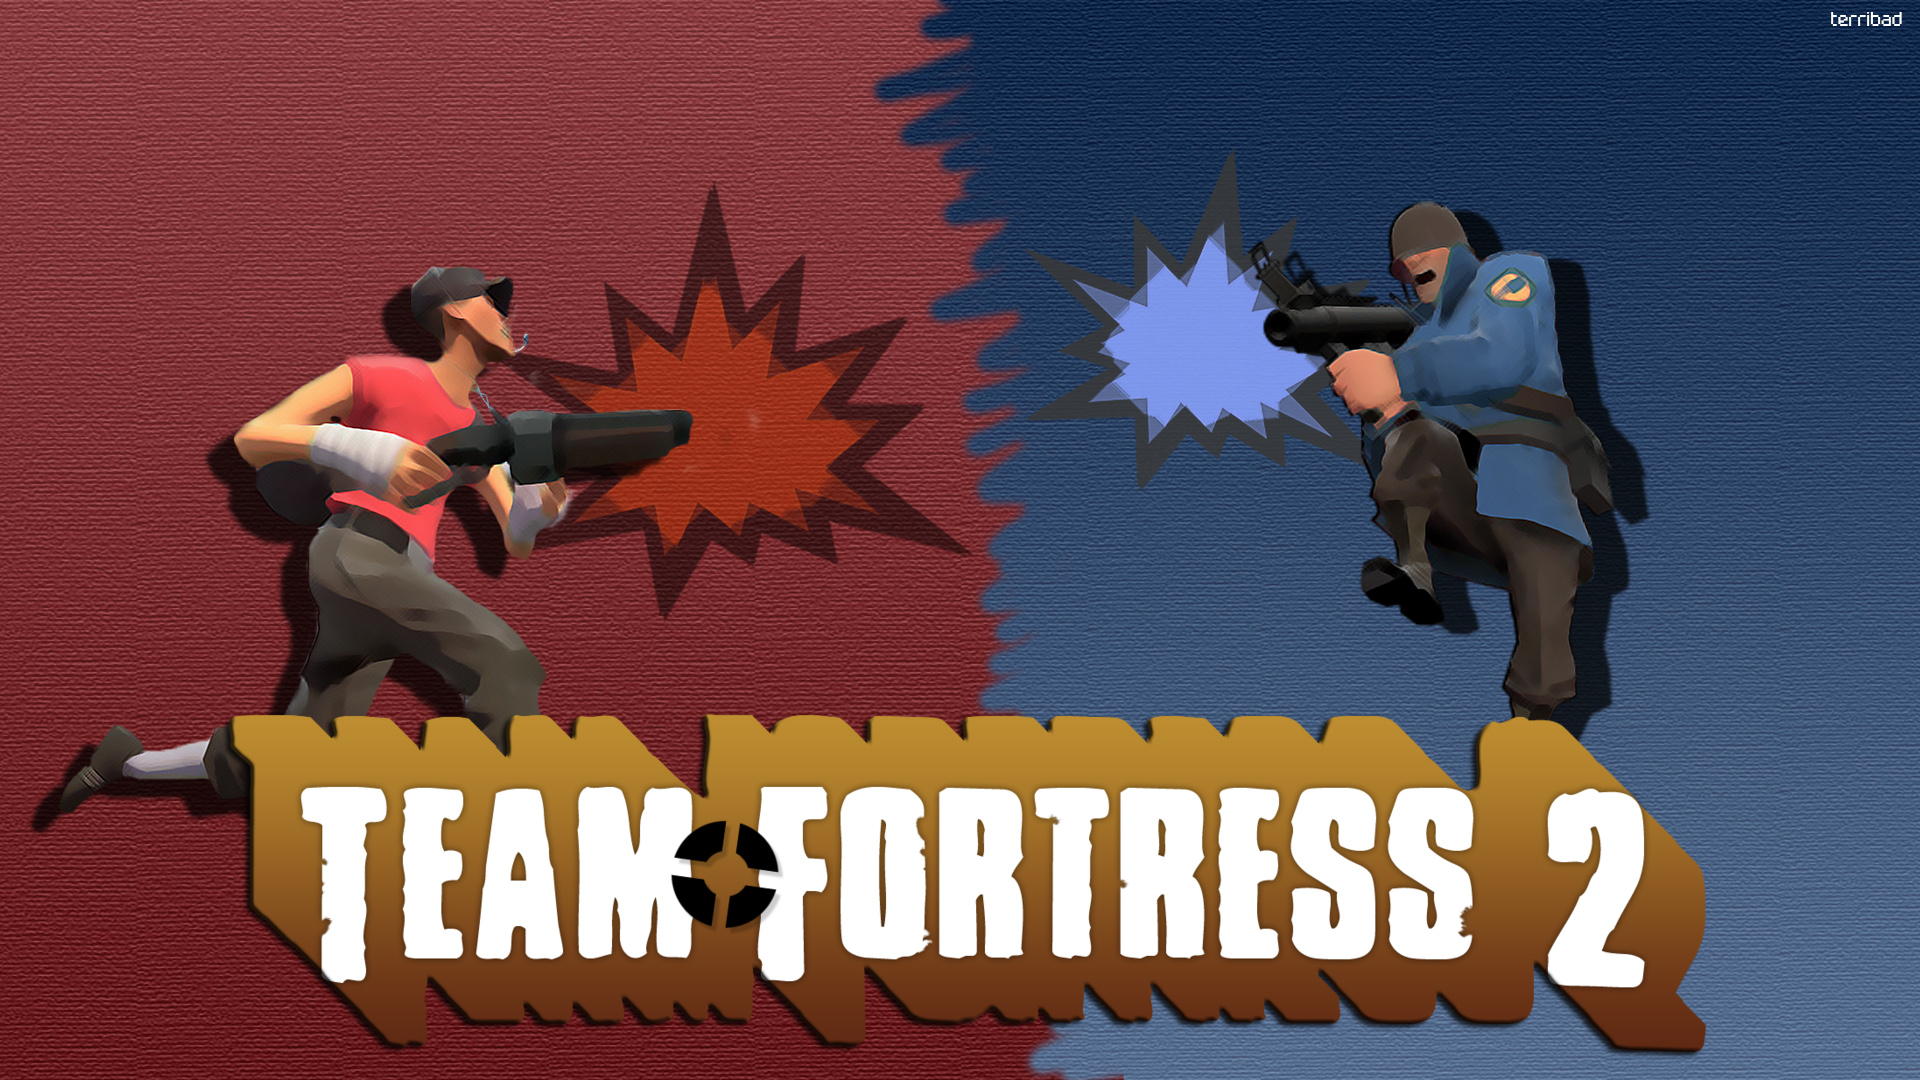 Team Fortress 2 HD Wallpaper | 1920x1080 | ID:39226